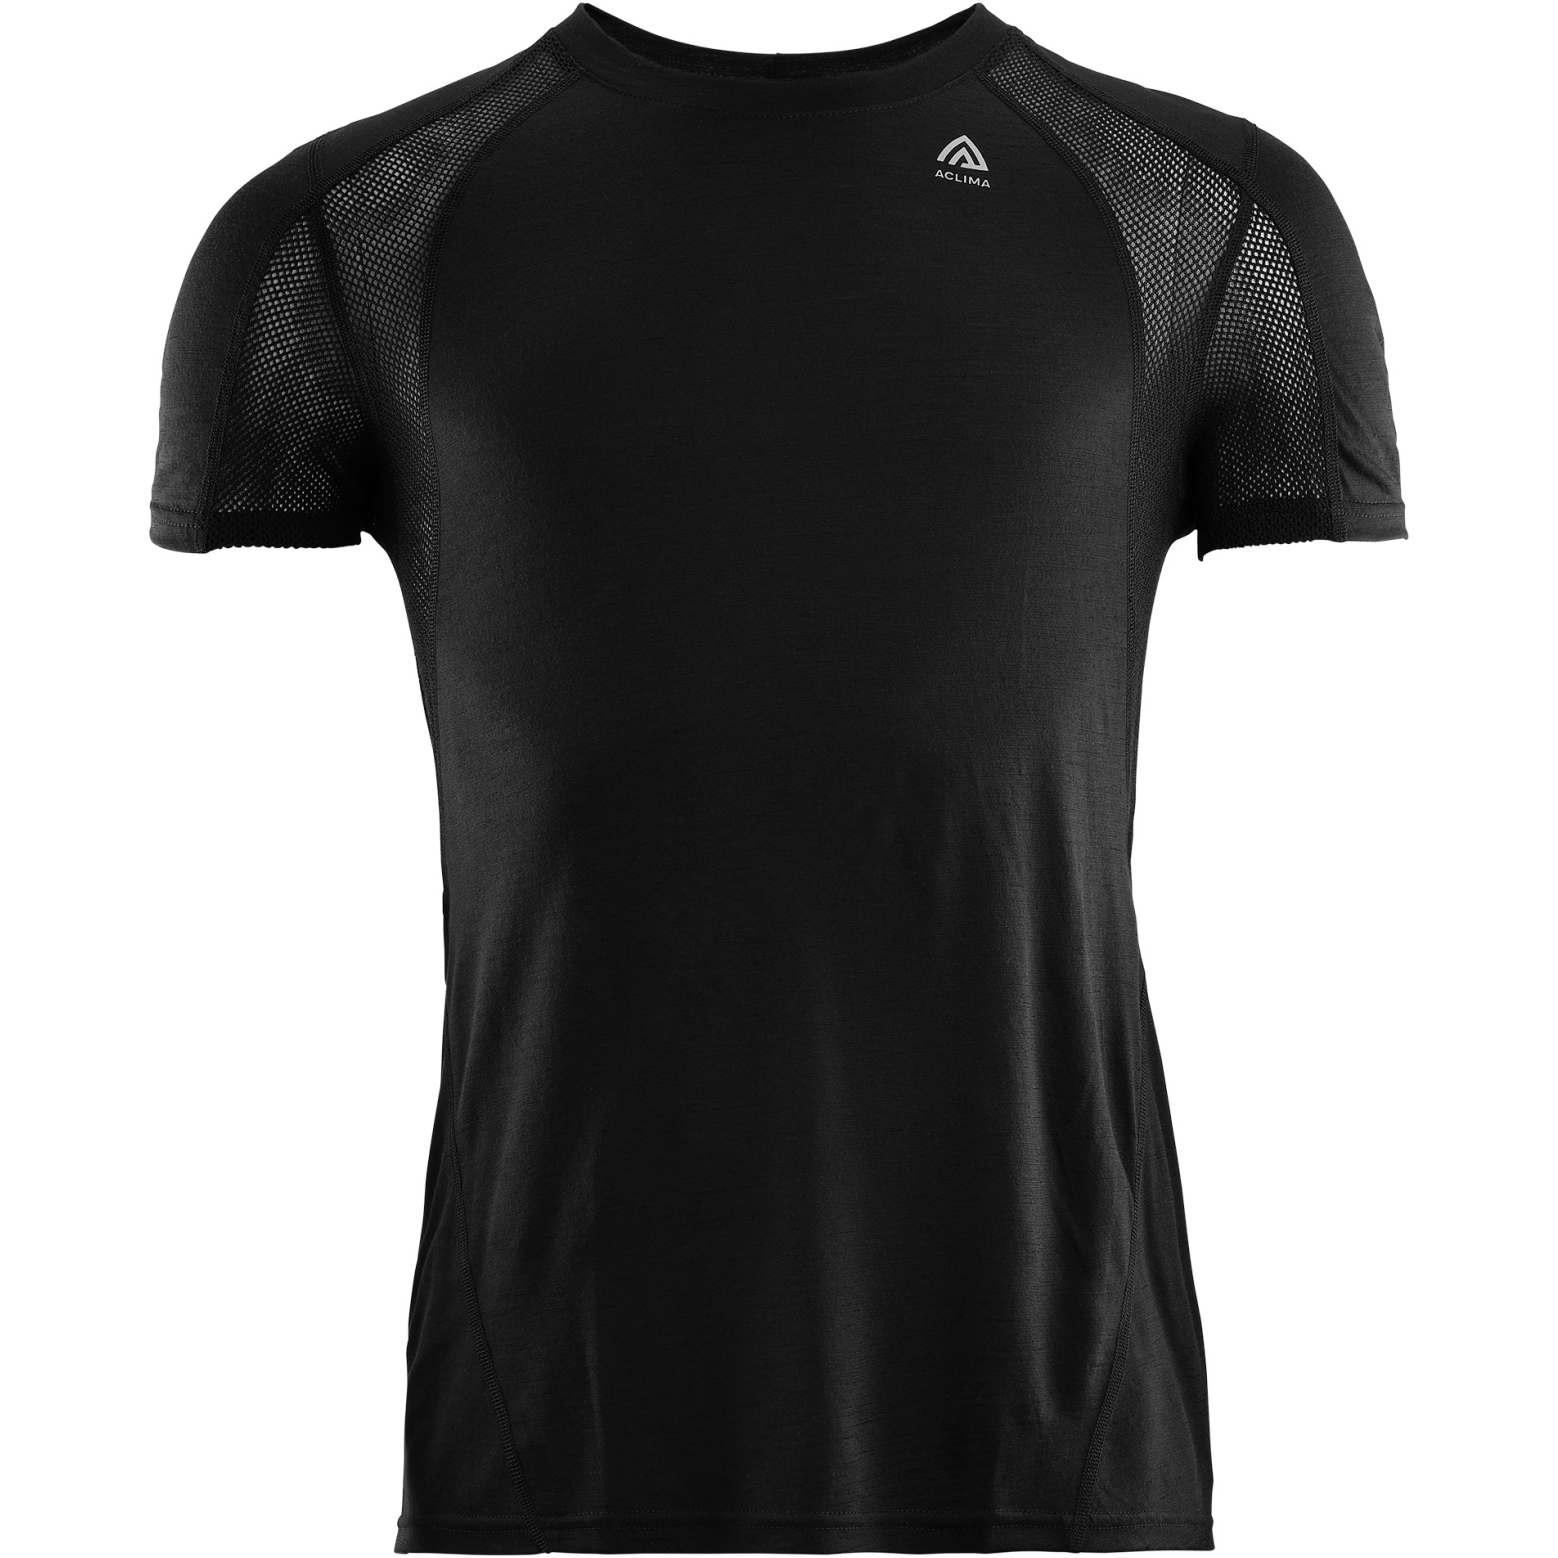 Produktbild von Aclima Lightwool Sports T-Shirt - jet black